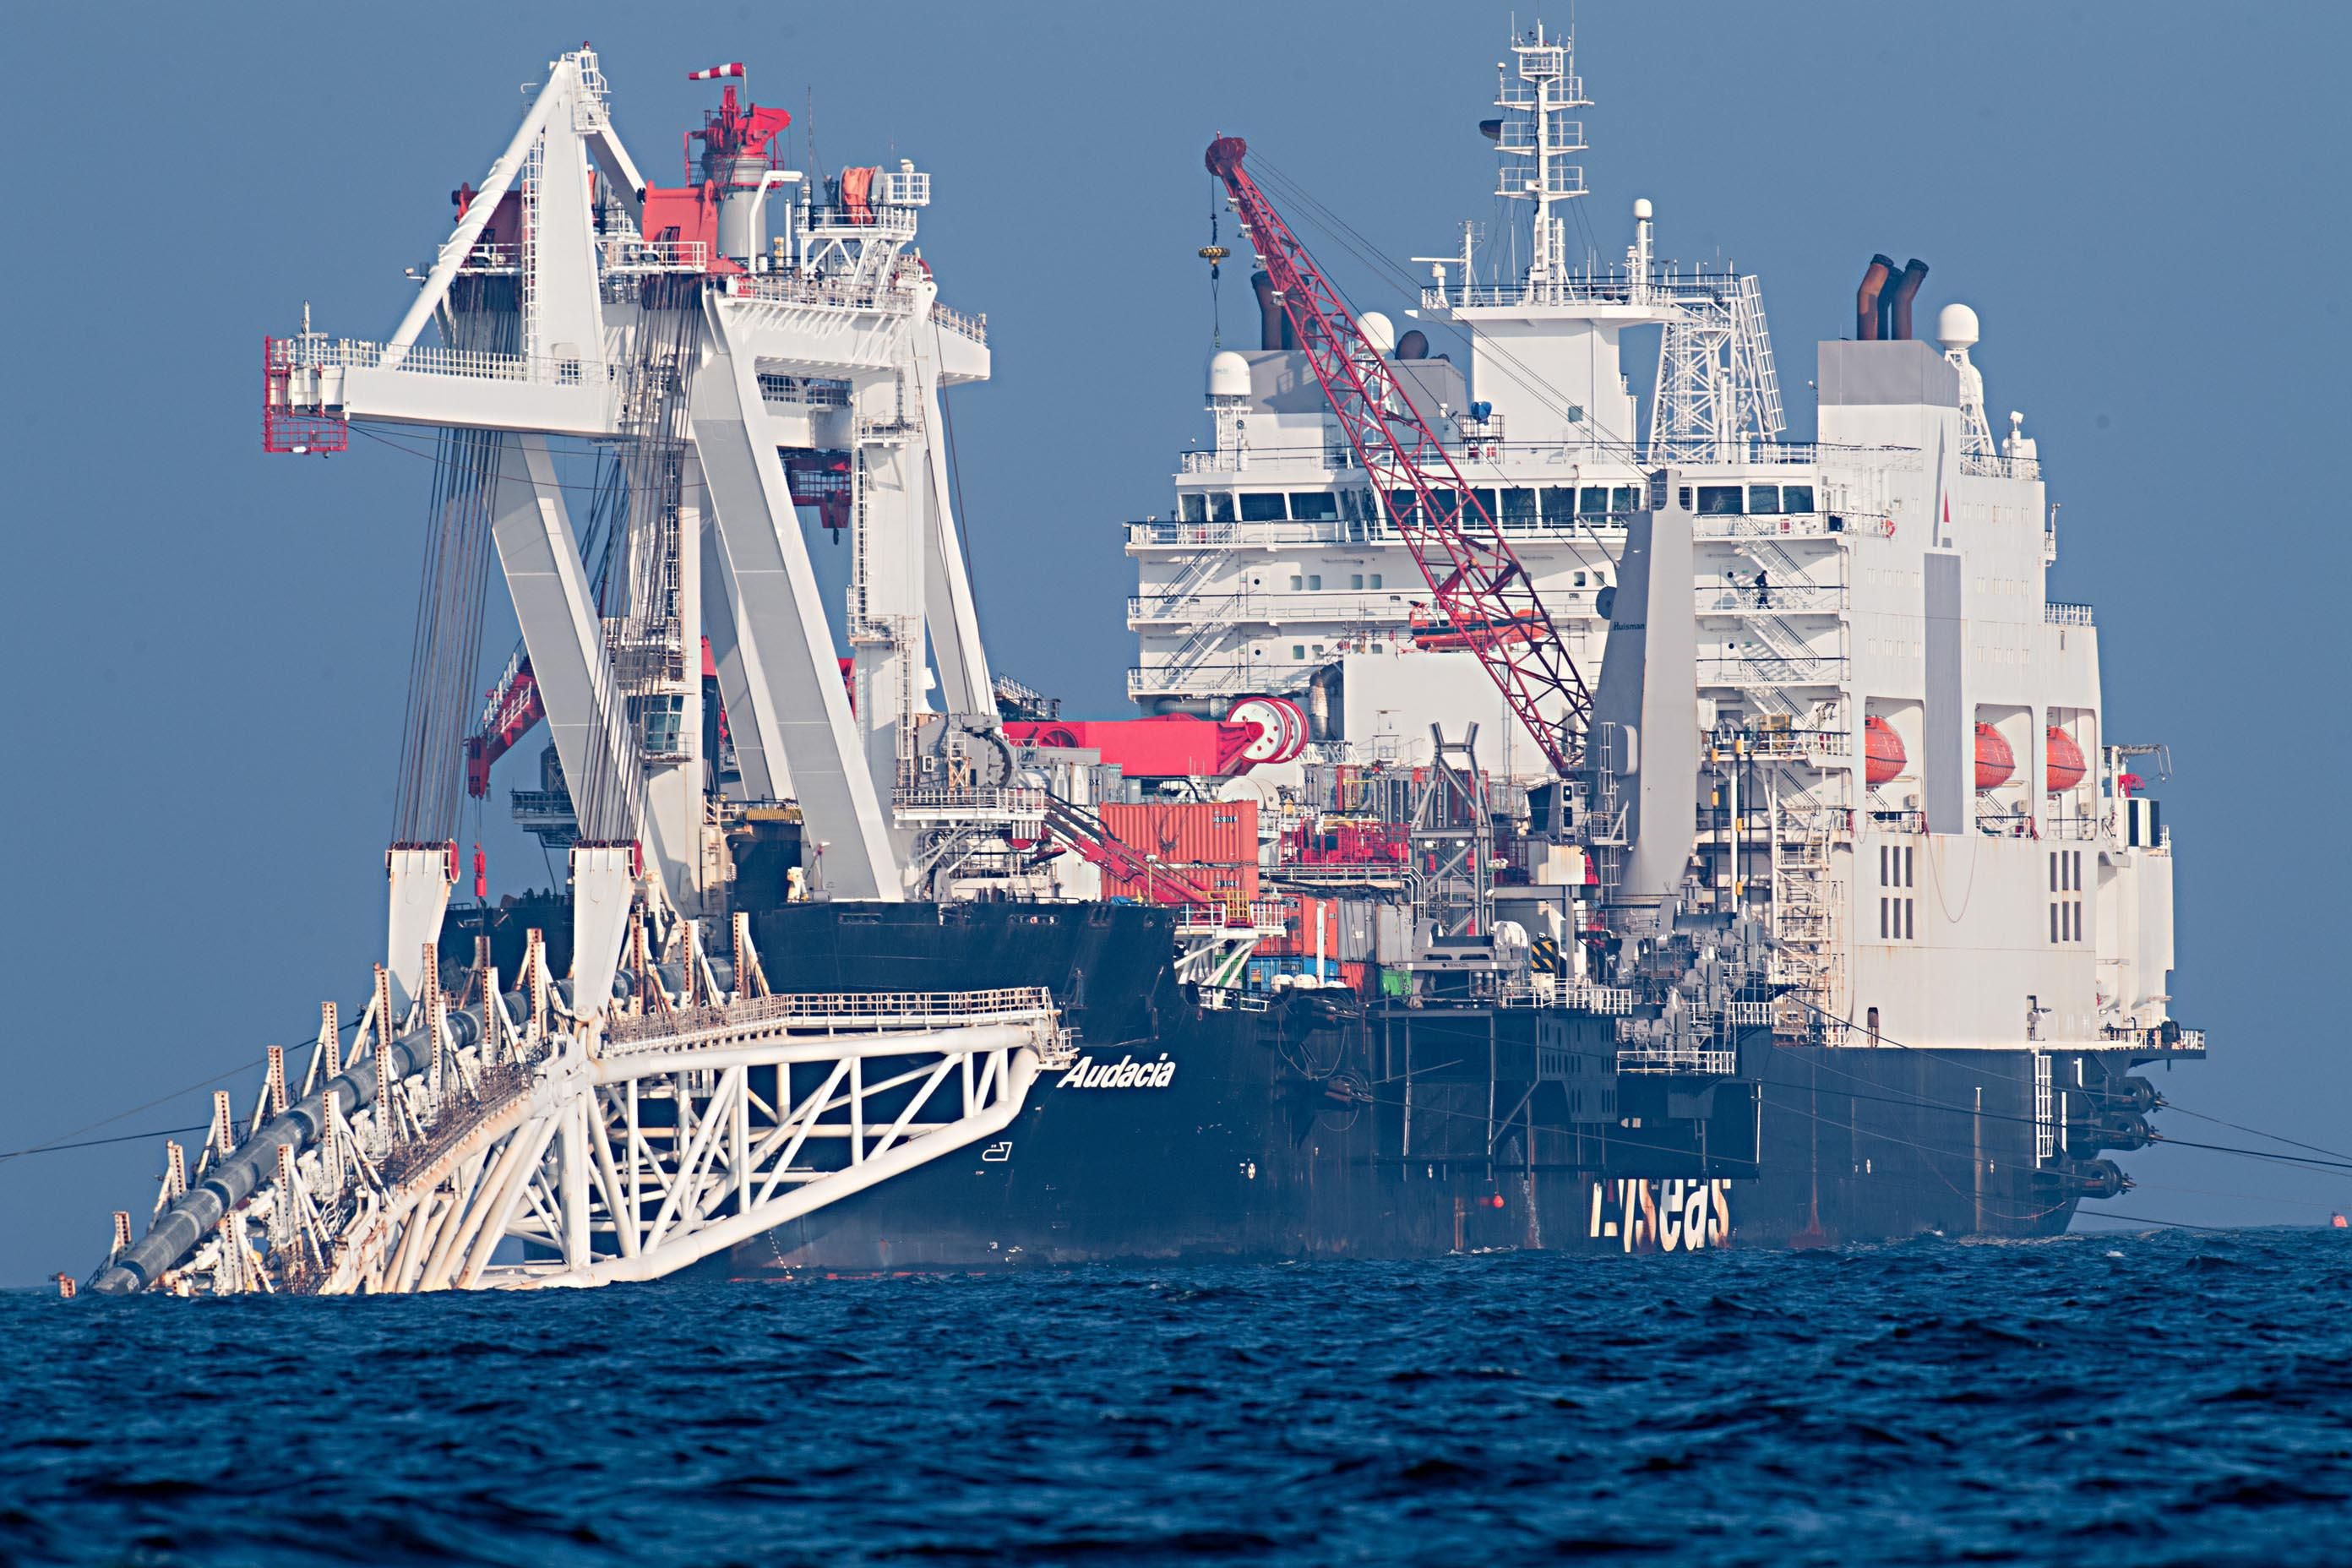 nave Audacia tubi gasdotto Nord Stream 2 Mar Baltico